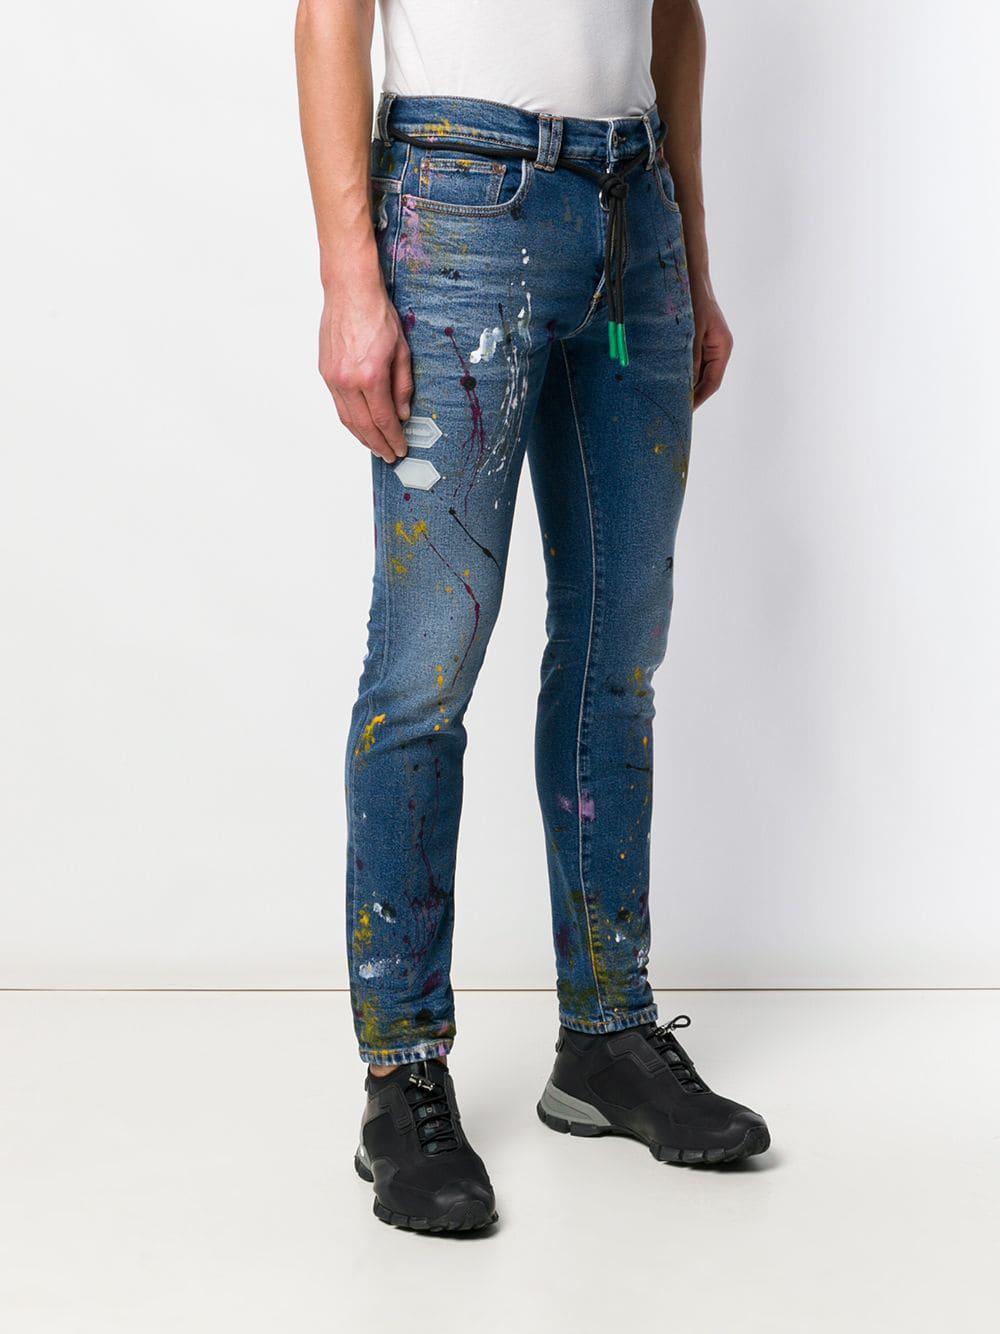 Off-White c/o Virgil Abloh Denim Paint Splattered Skinny Jeans in Blue for  Men - Lyst